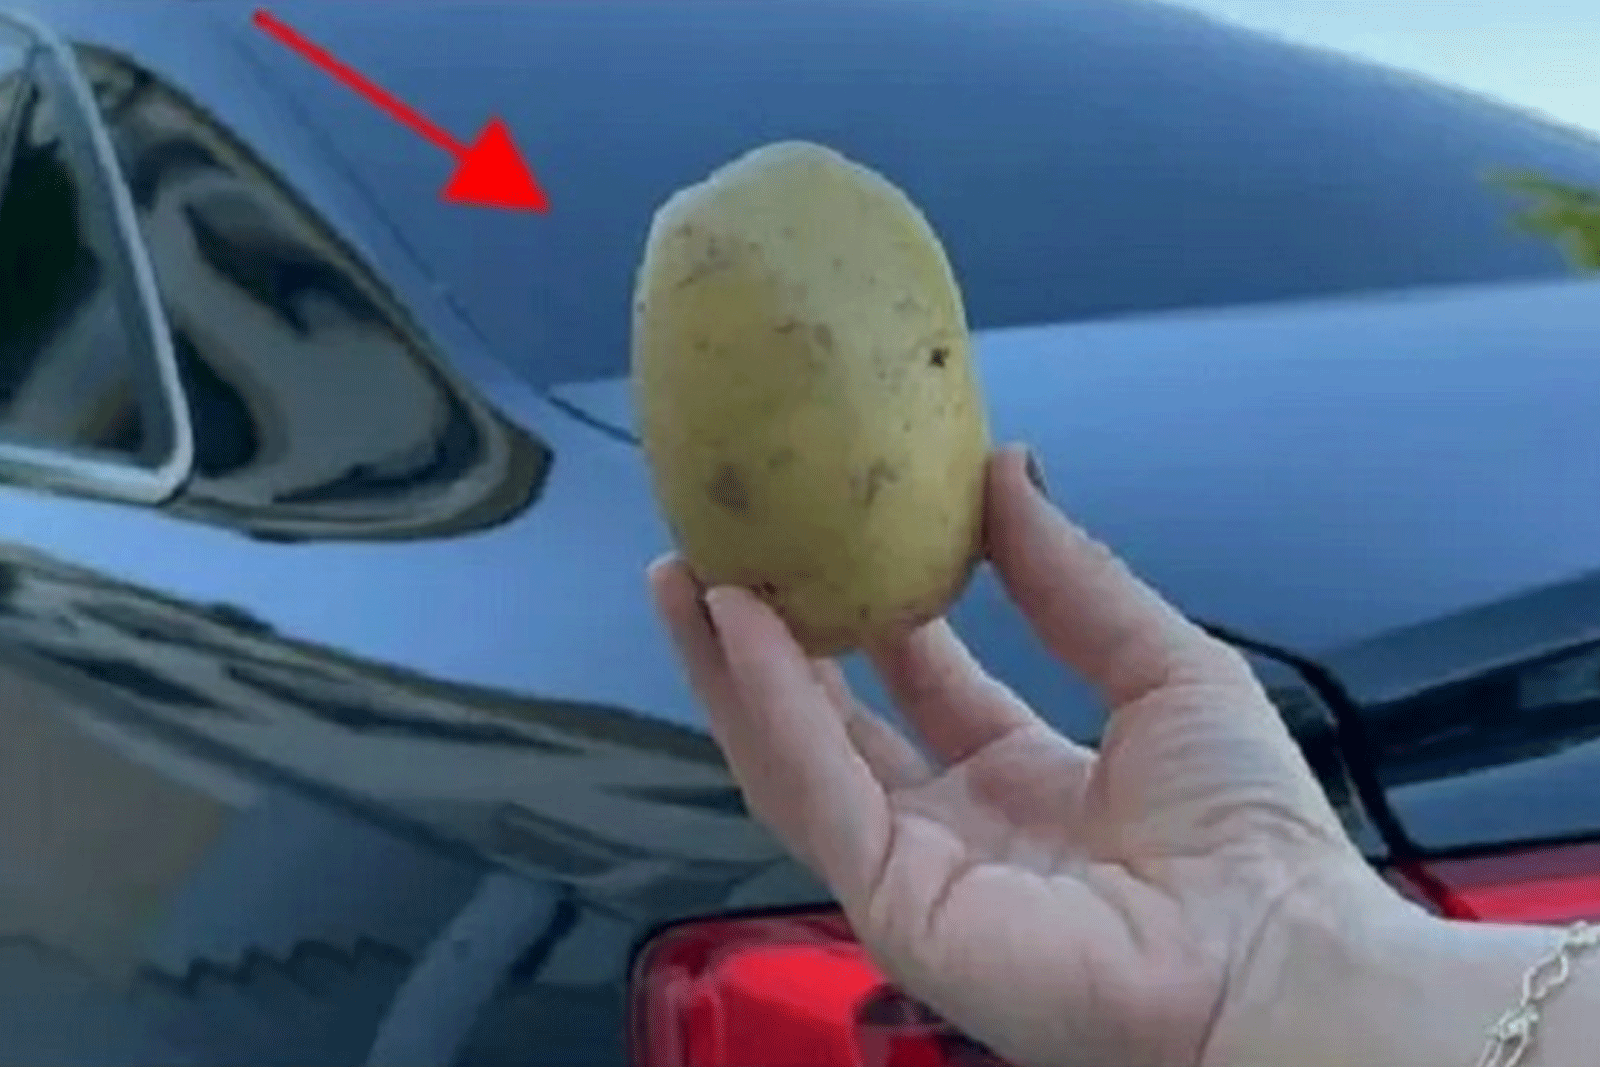 Γιατί να Χρησιμοποιήσετε μια Πατάτα στο Αυτοκίνητό σας